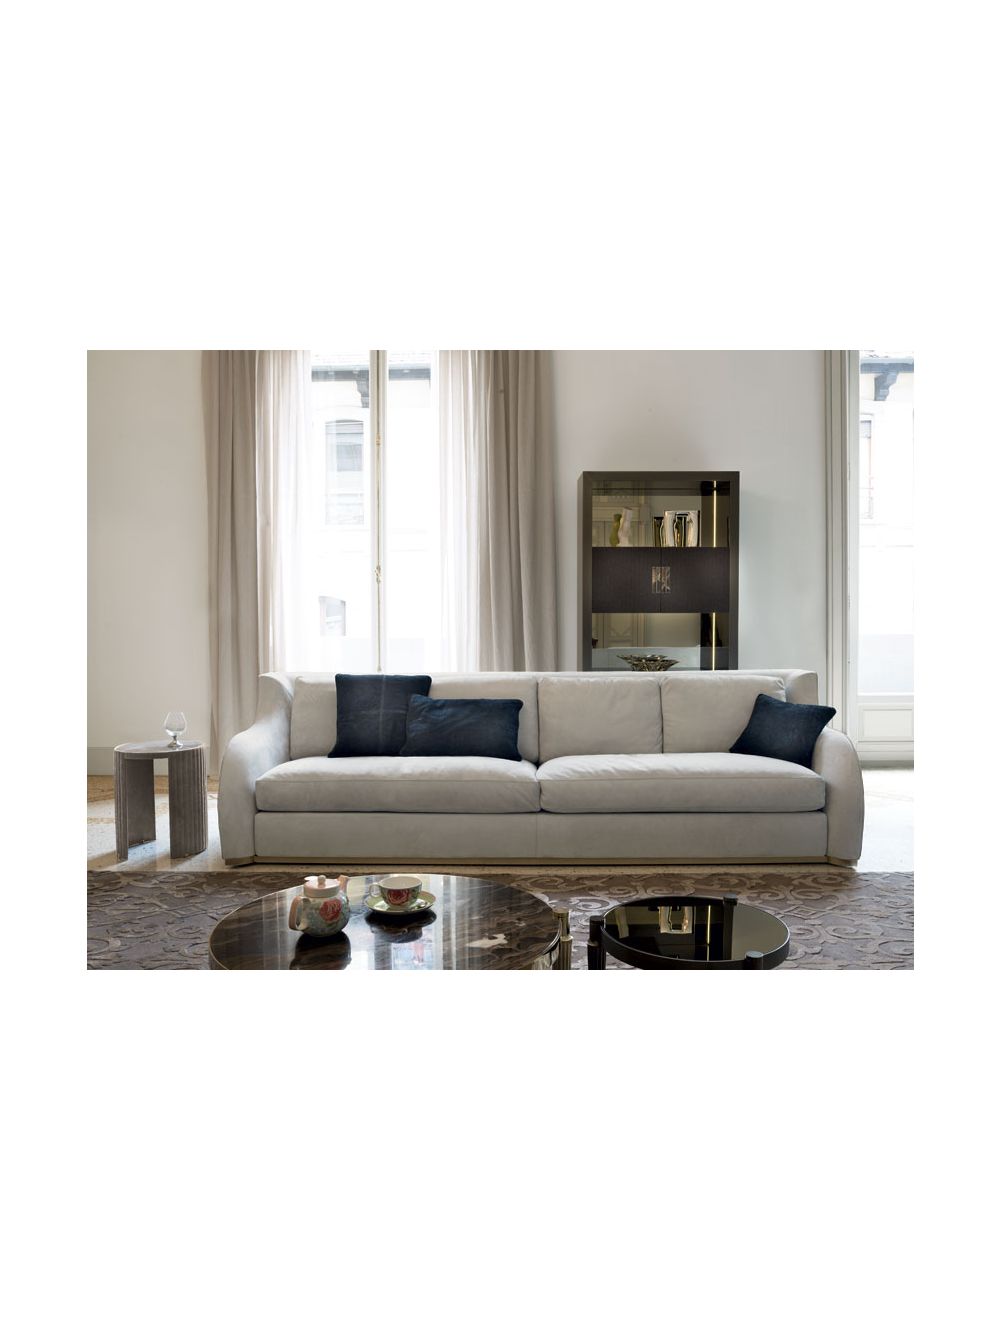 Rey Longhi Sofa Online Se Design